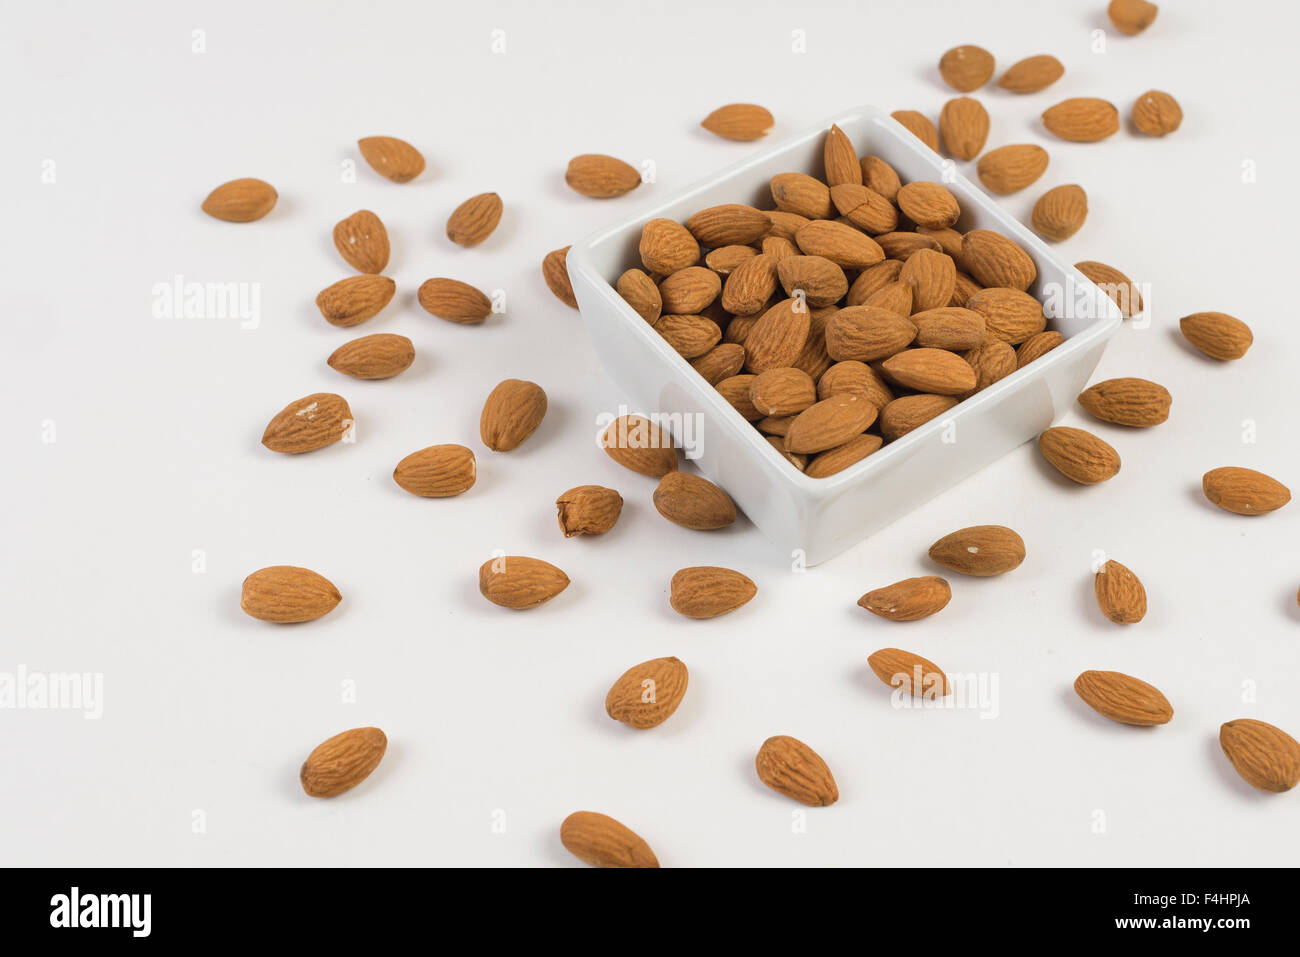 almonds. frutos secos, buena salud y alimentacion. Good Food Stock Photo